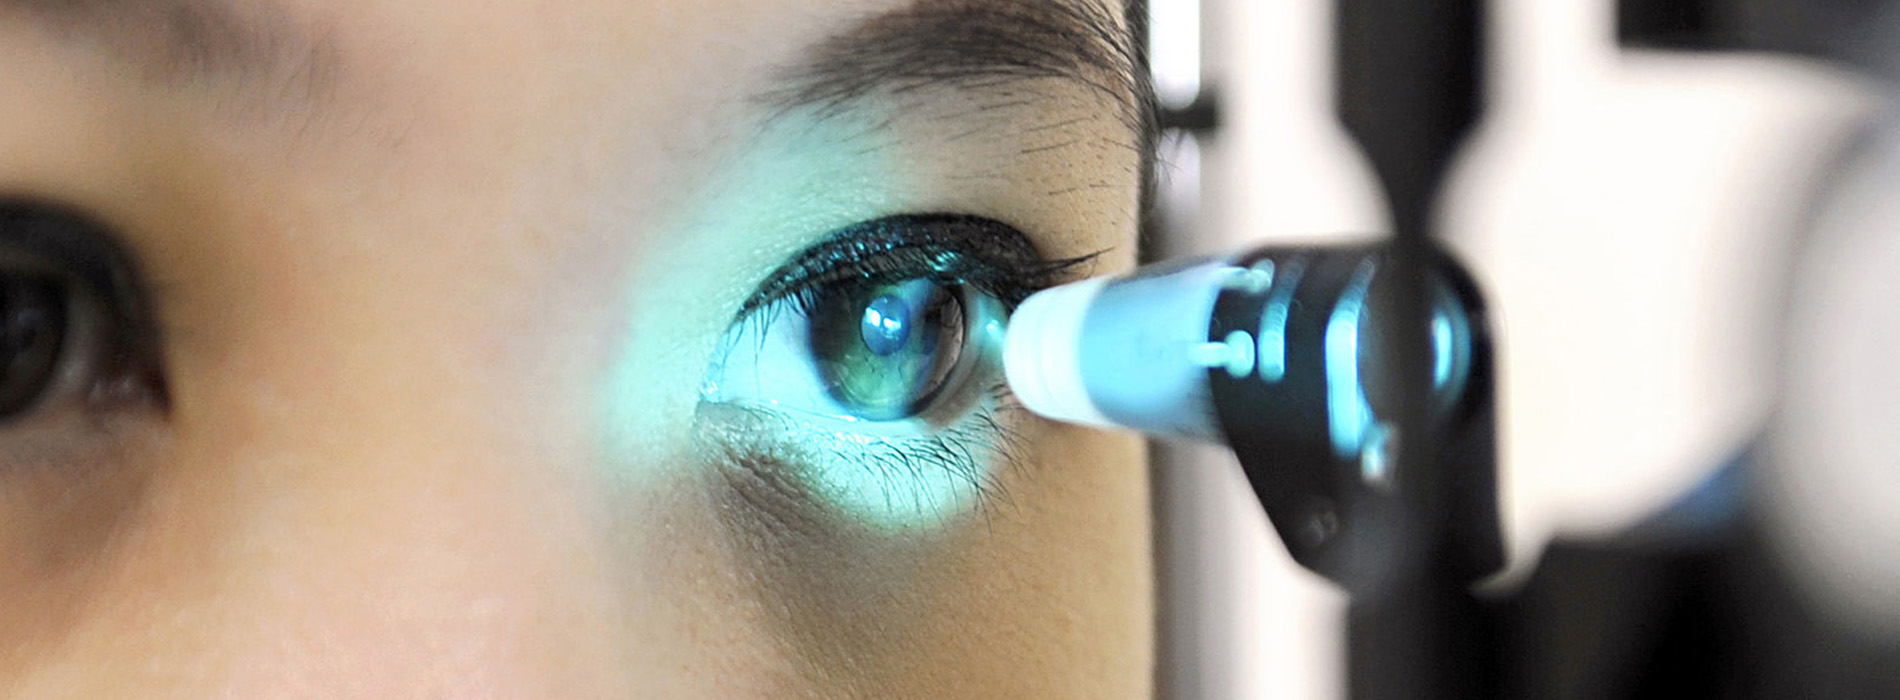 Gardens Vision Boutique | Comprehensive Eye Exams, Optical Department and Cataract Diagnosis